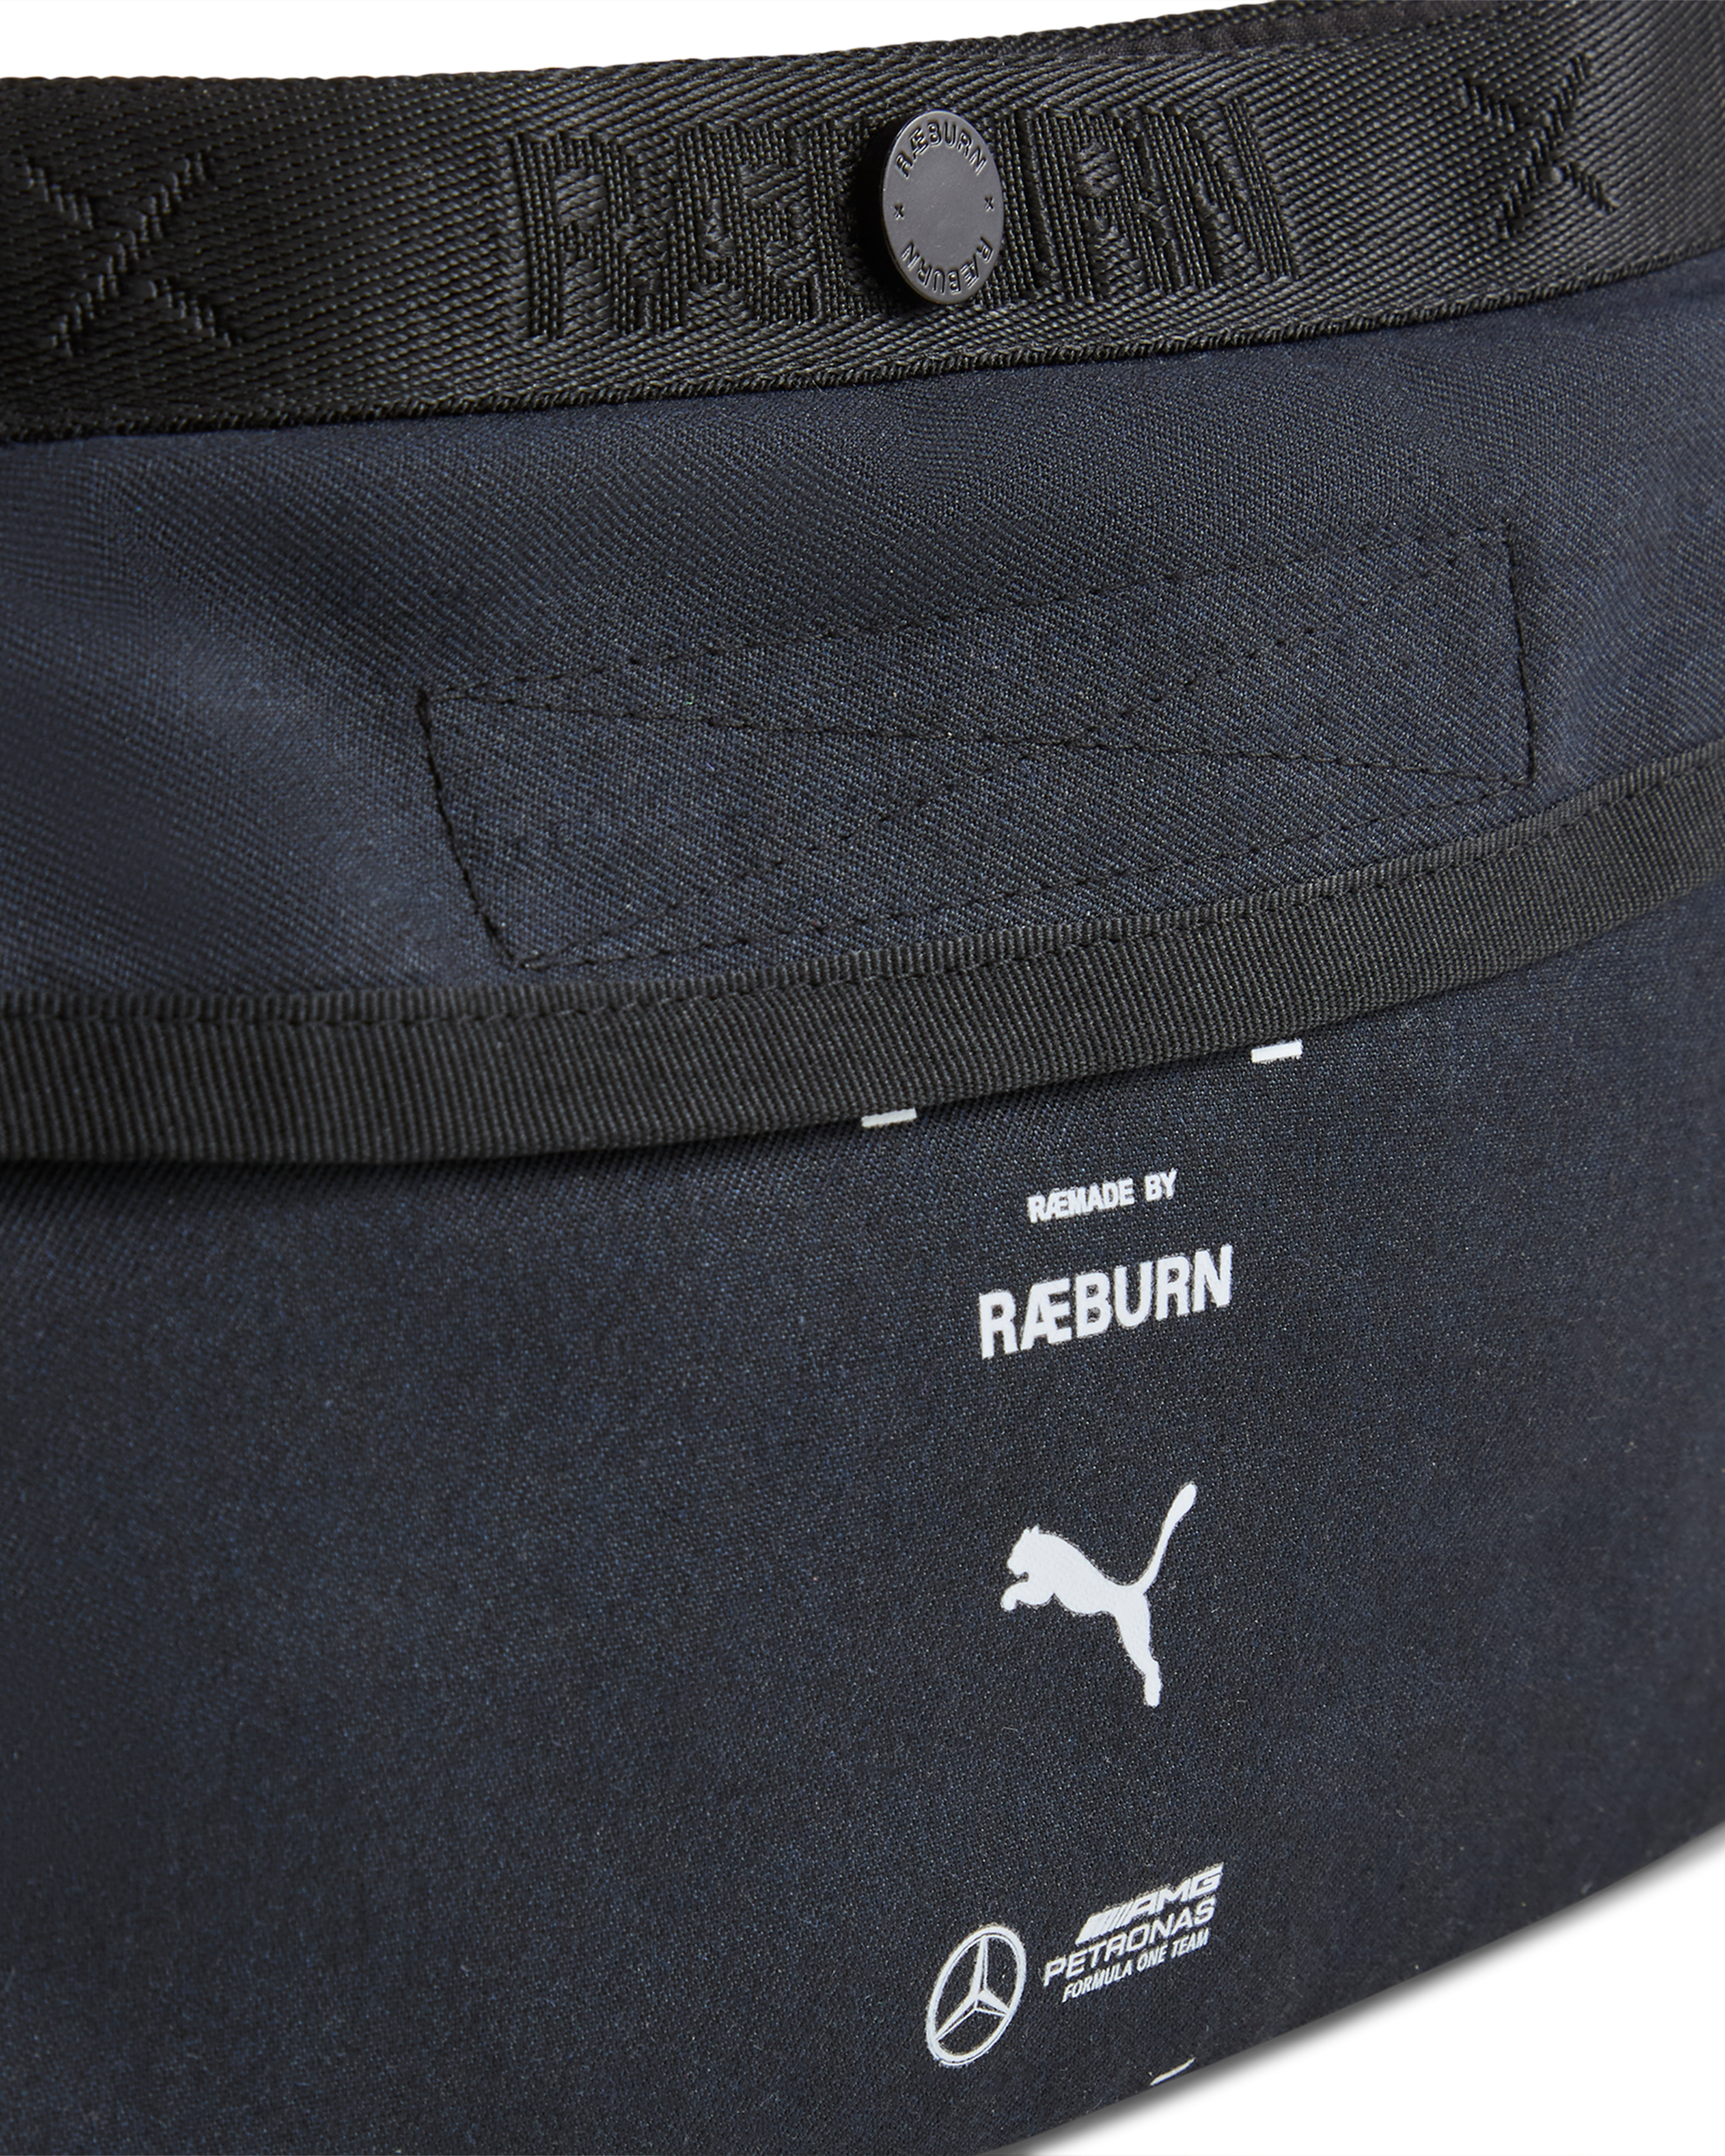 Raeburn x Mercedes-AMG F1 x Puma Masterpiece Sling Bag